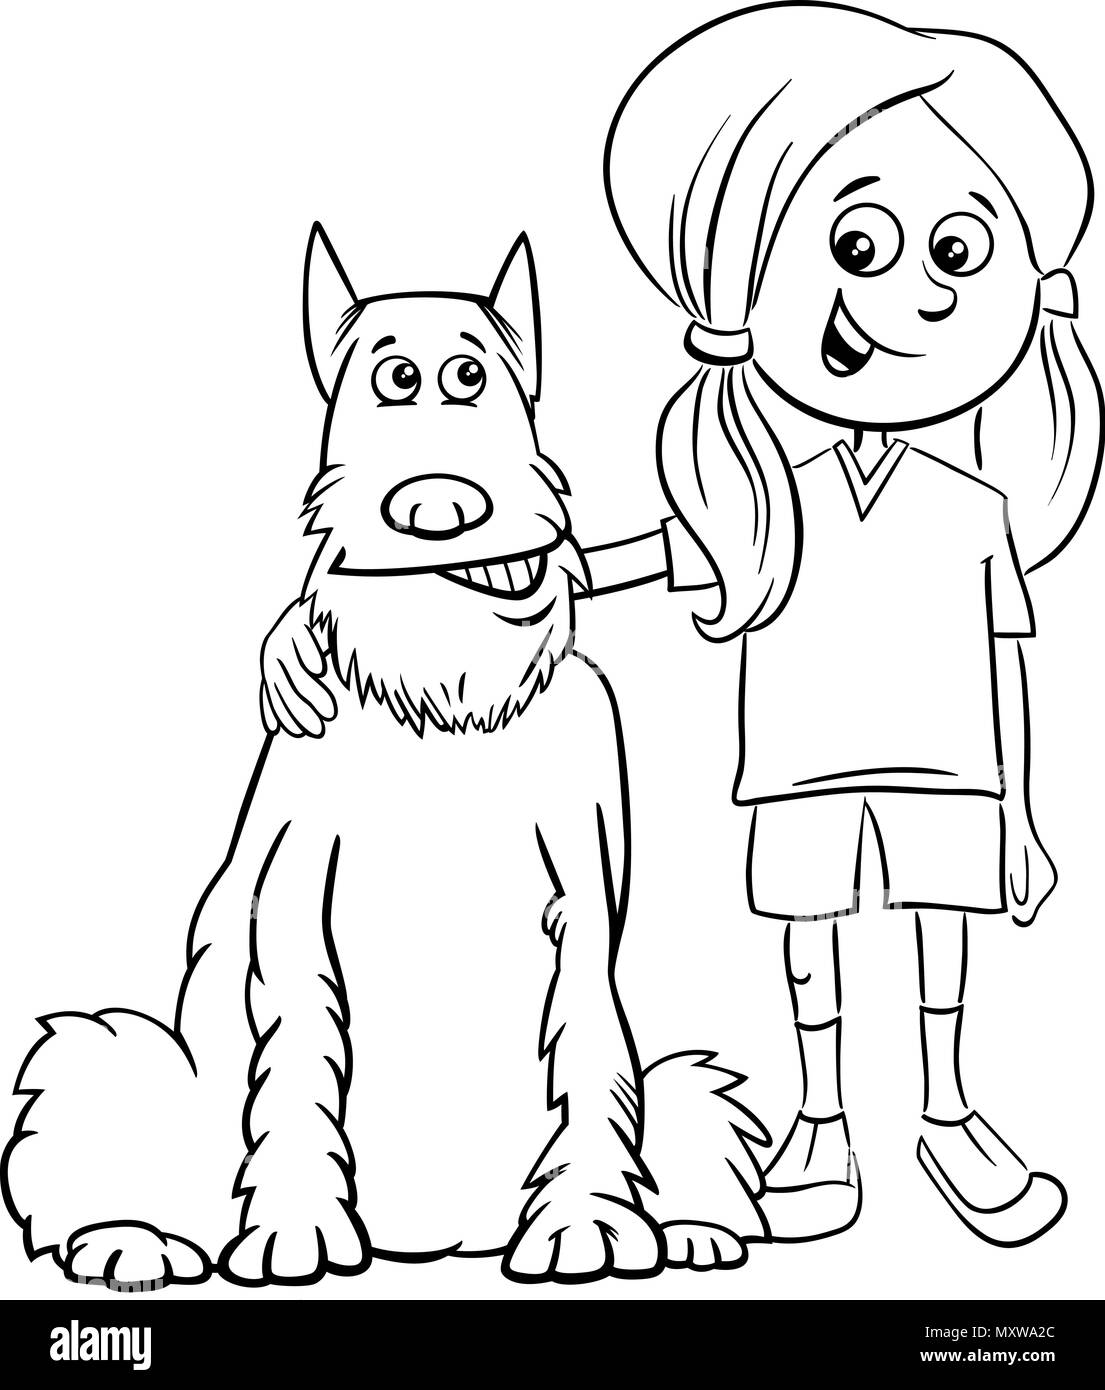 Разукрашка девочка с собакой